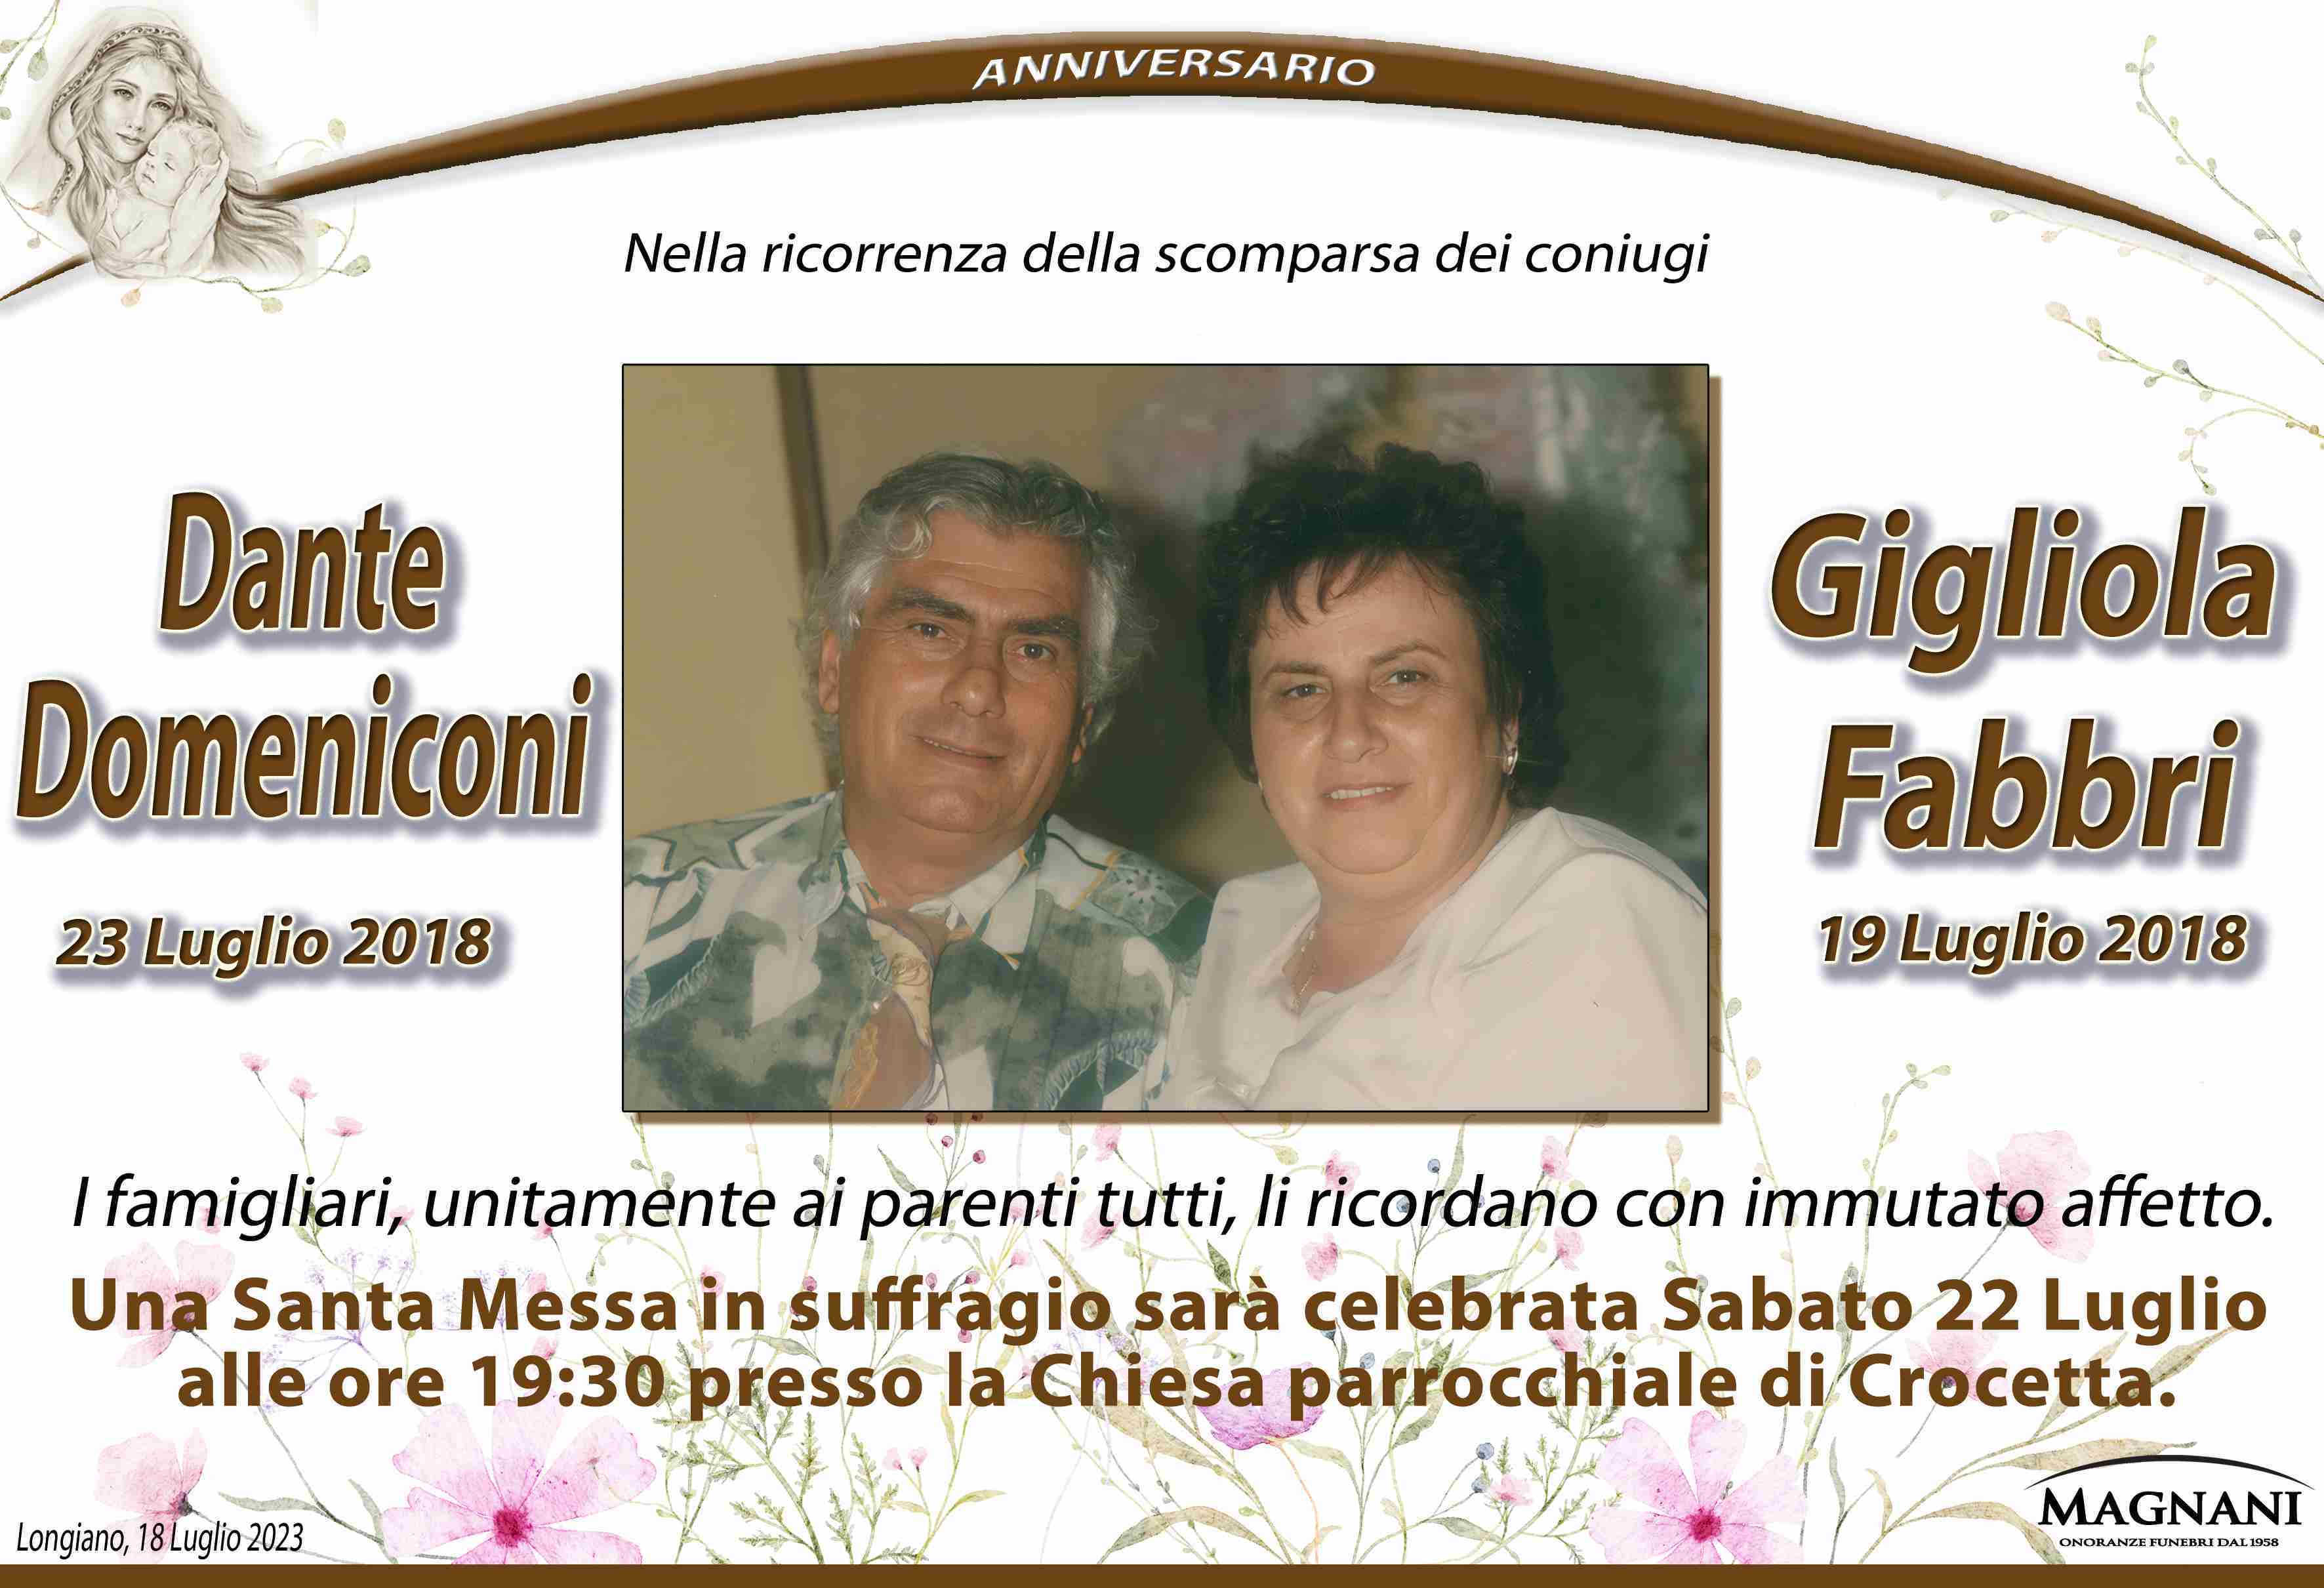 Dante Domeniconi e Gigliola Fabbri